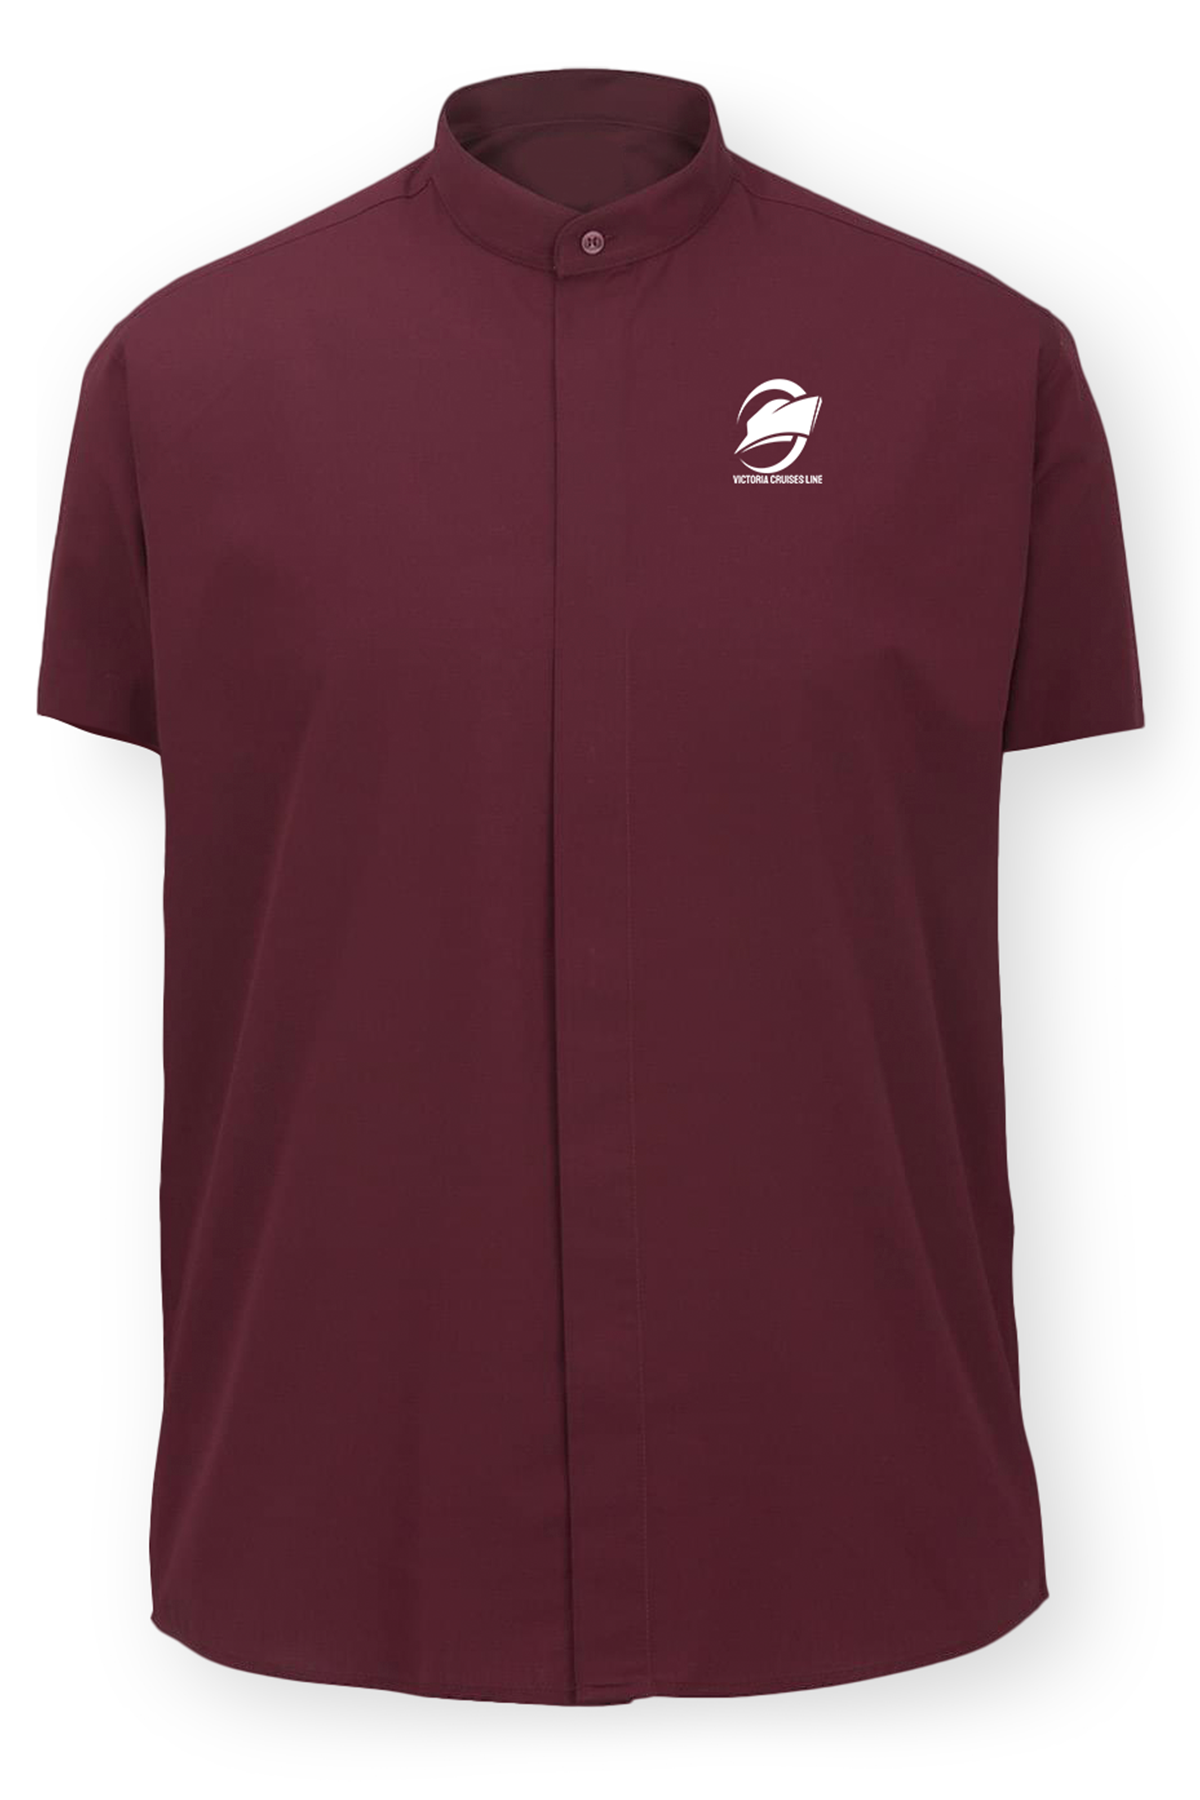 Men's Banded Collar Short-Sleeve Shirt, Burgundy [Left Chest / VCL All White]